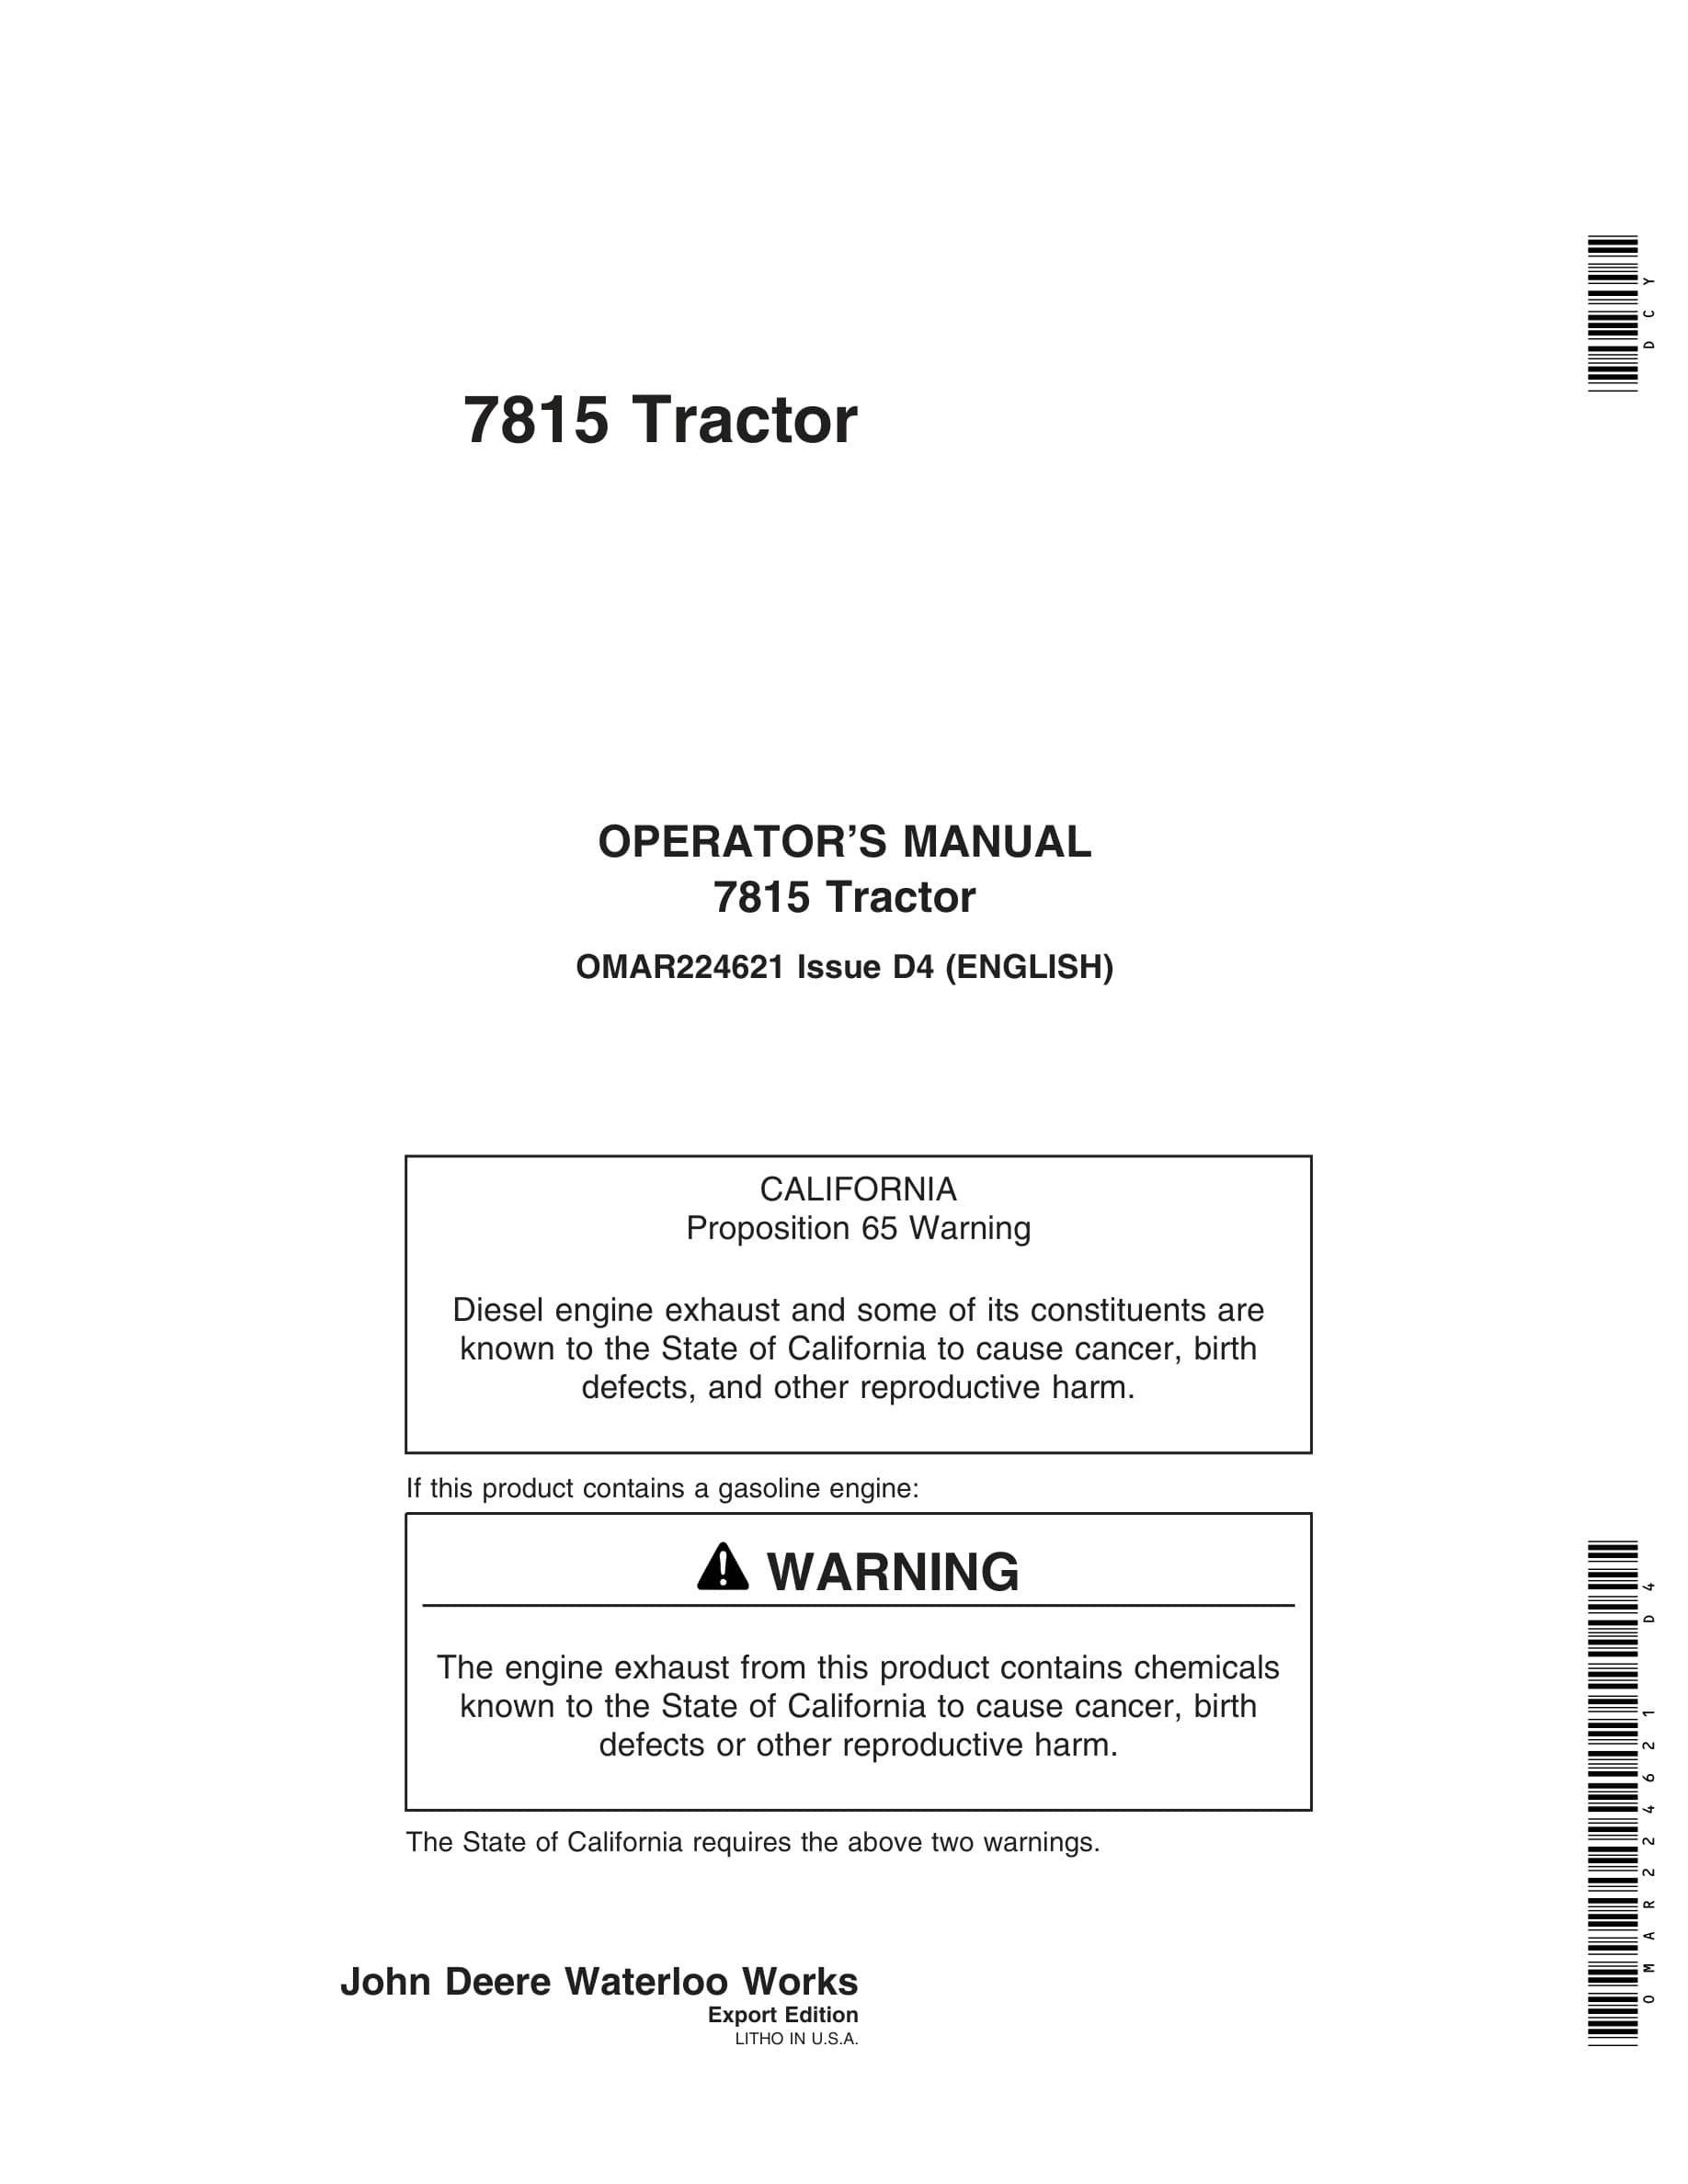 John Deere 7815 Tractors Operator Manual OMAR224621-1